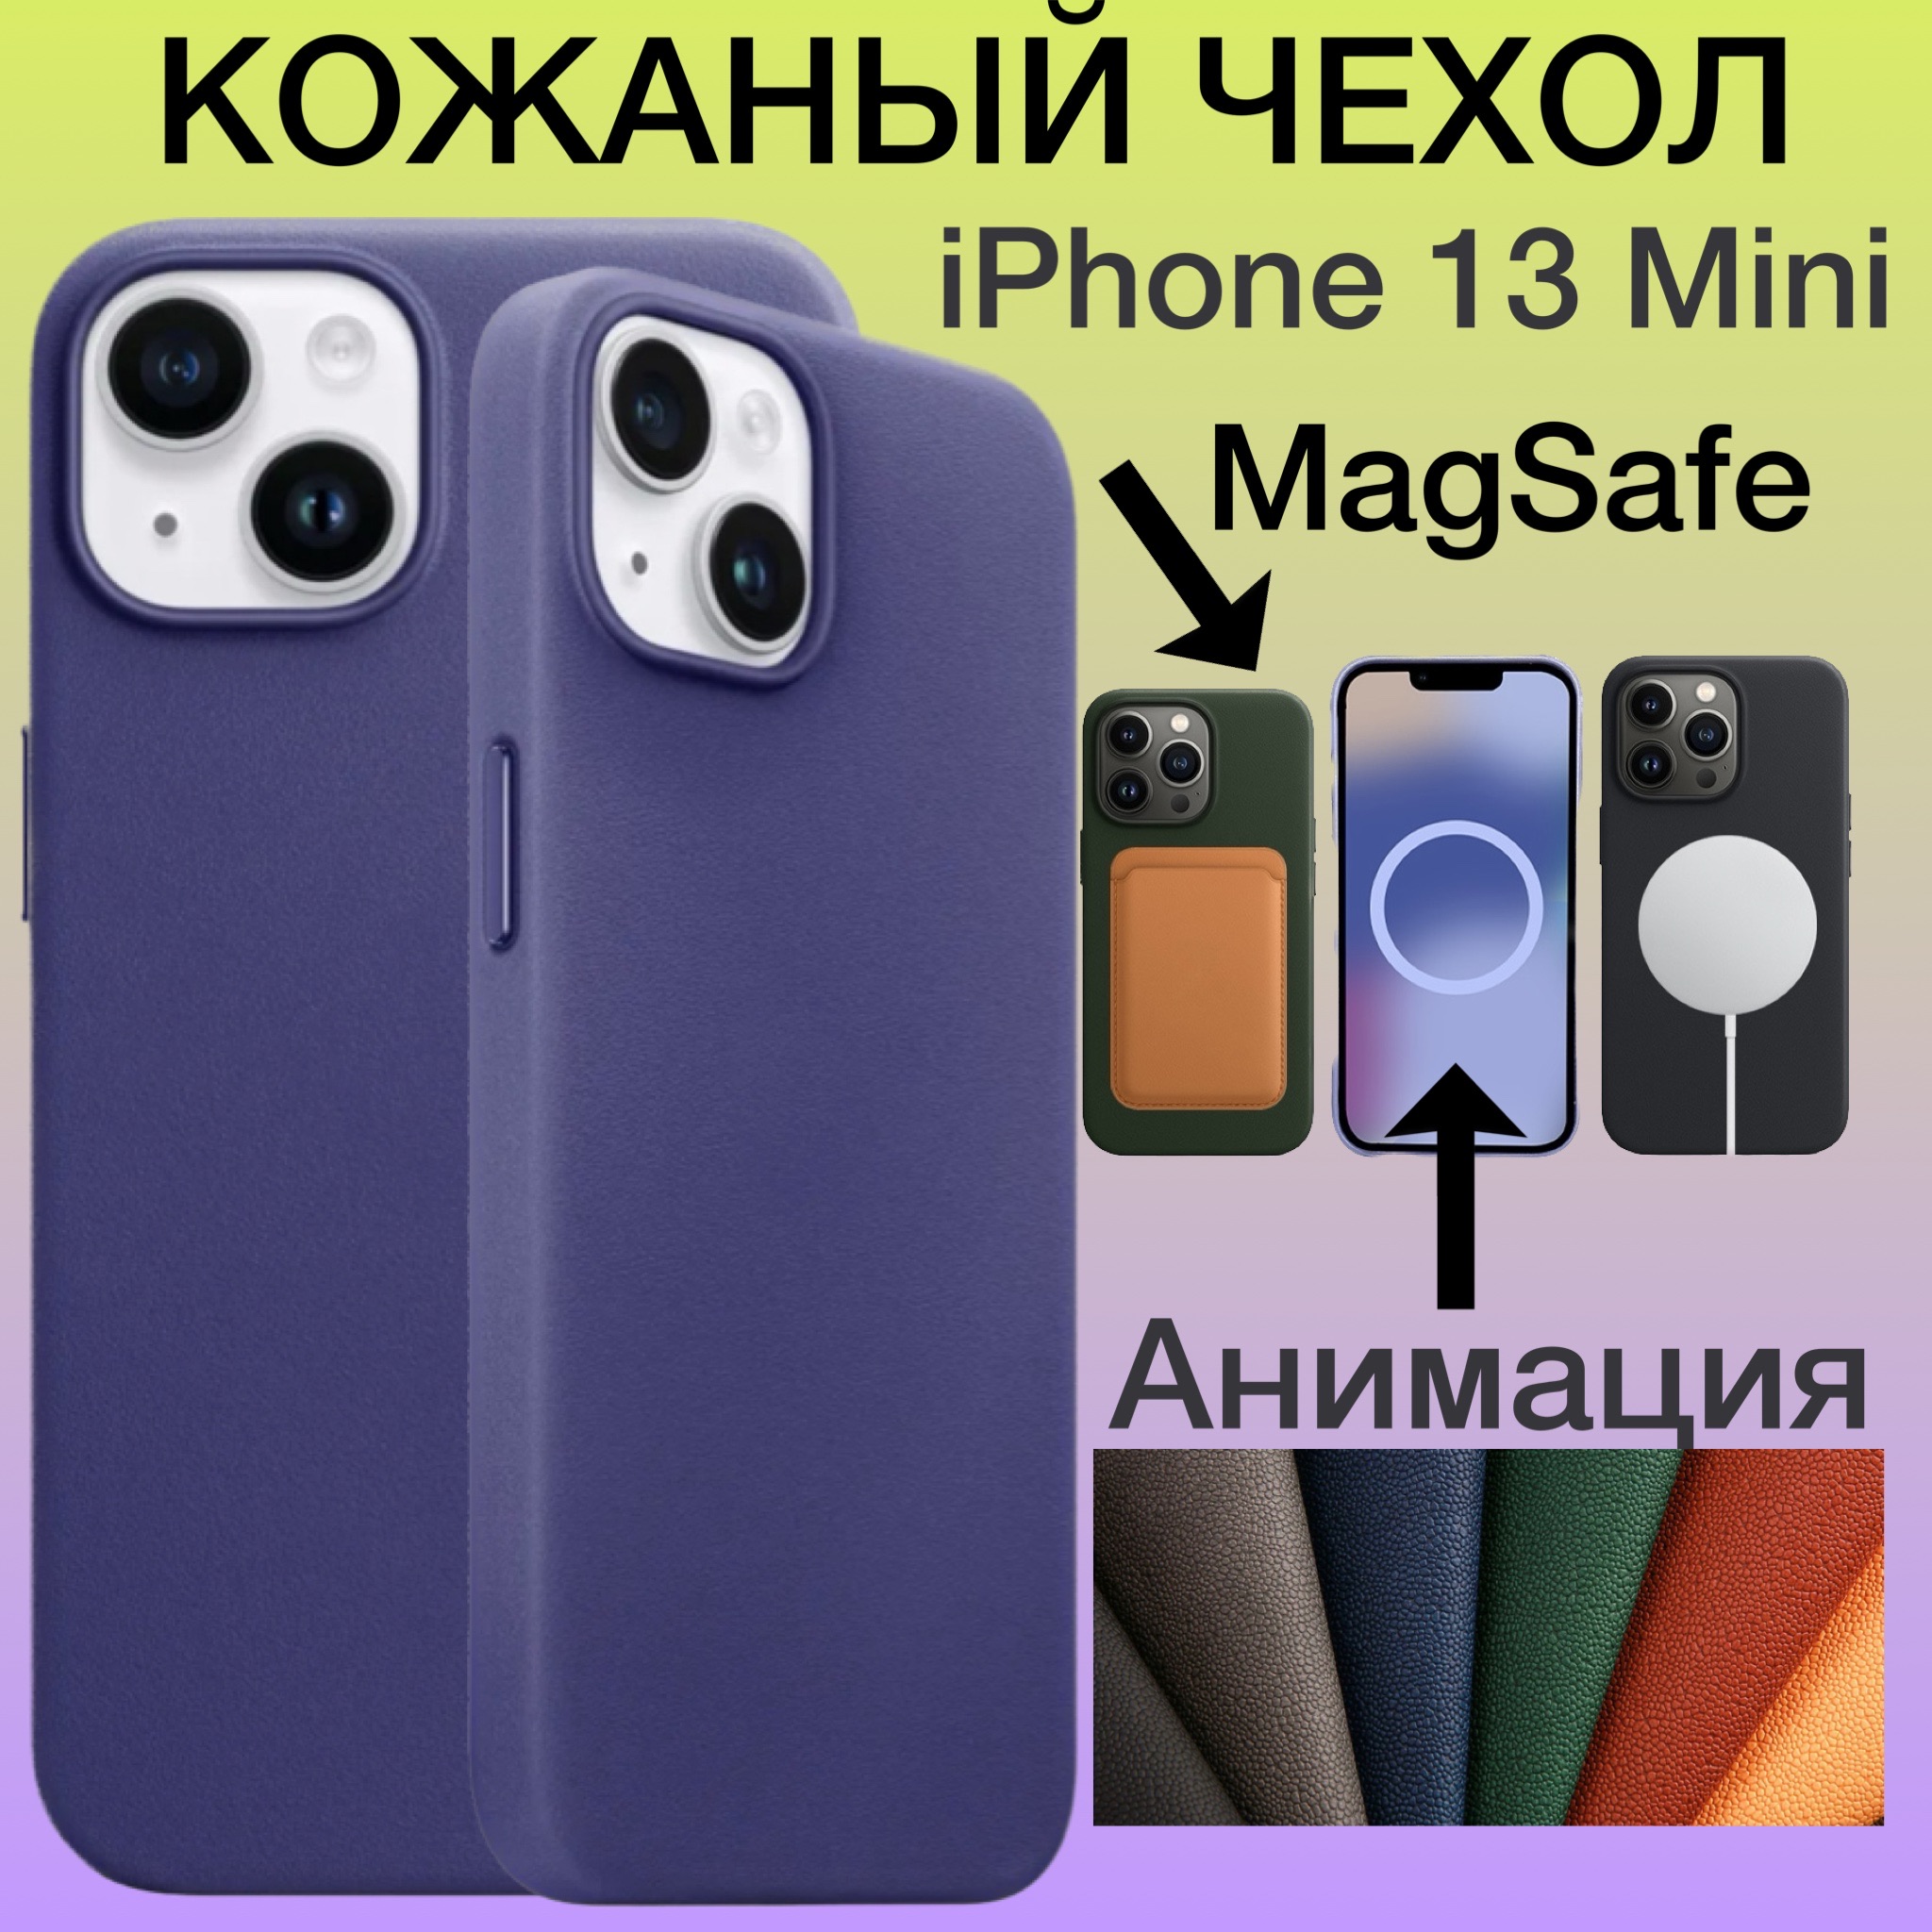 Кожаный чехол на iPhone 13 Mini с MagSafe с Анимацией цвет сиреневый